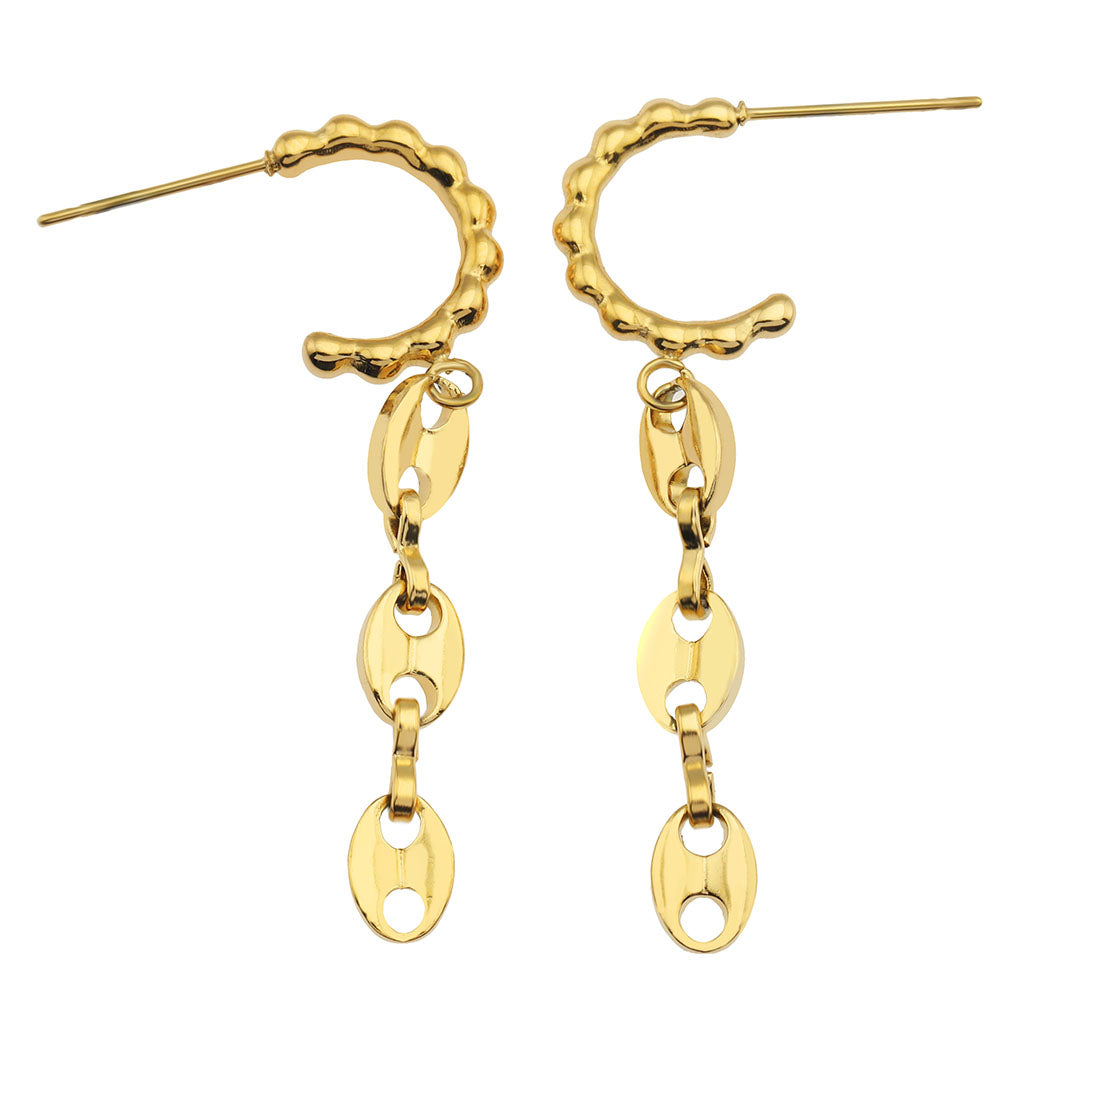 hackney_nine | hackneynine | DAKOTA21267_earrings | safety_pin_earrings | affordable_jewelry | dainty_jewelry | stainless_steel_jewelry | 18K_gold_jewelry | gold_dipped_jewelry | gold-jewelry | hoops } chain_link_jewelry